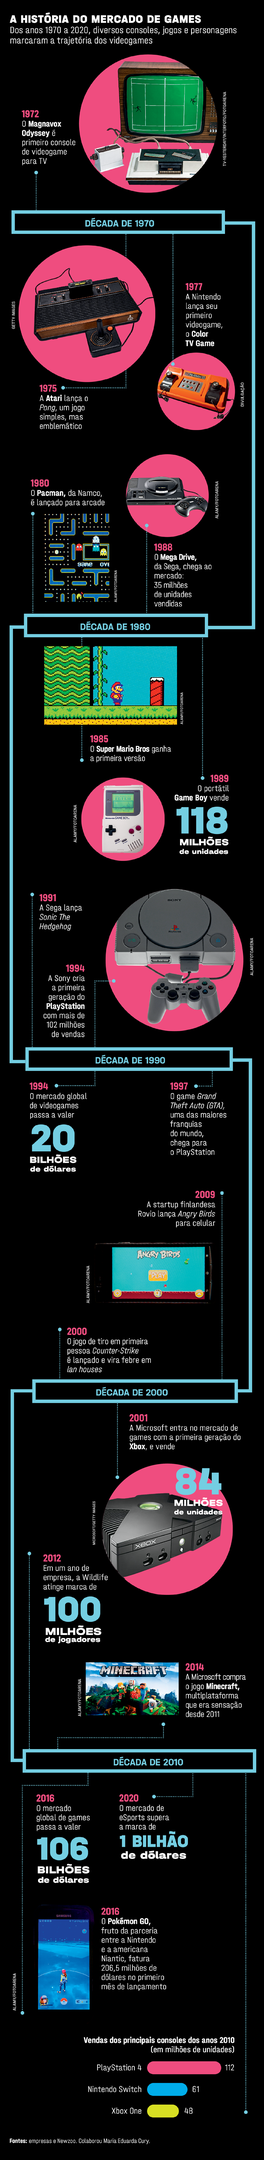 Historia dos videogames